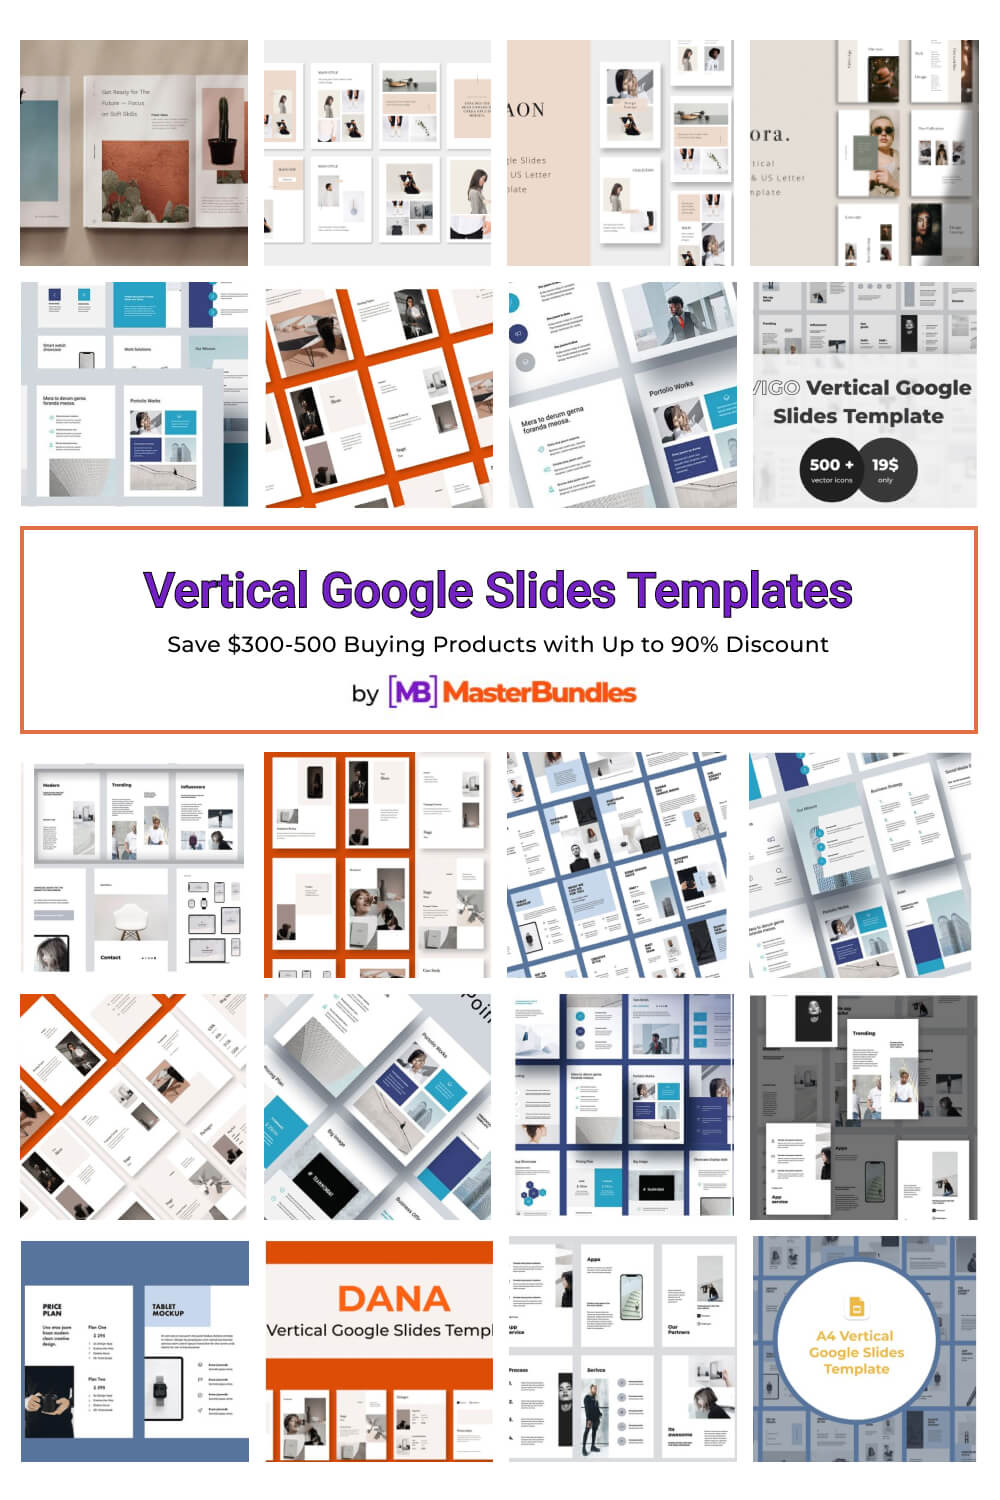 vertical google slides templates pinterest image.